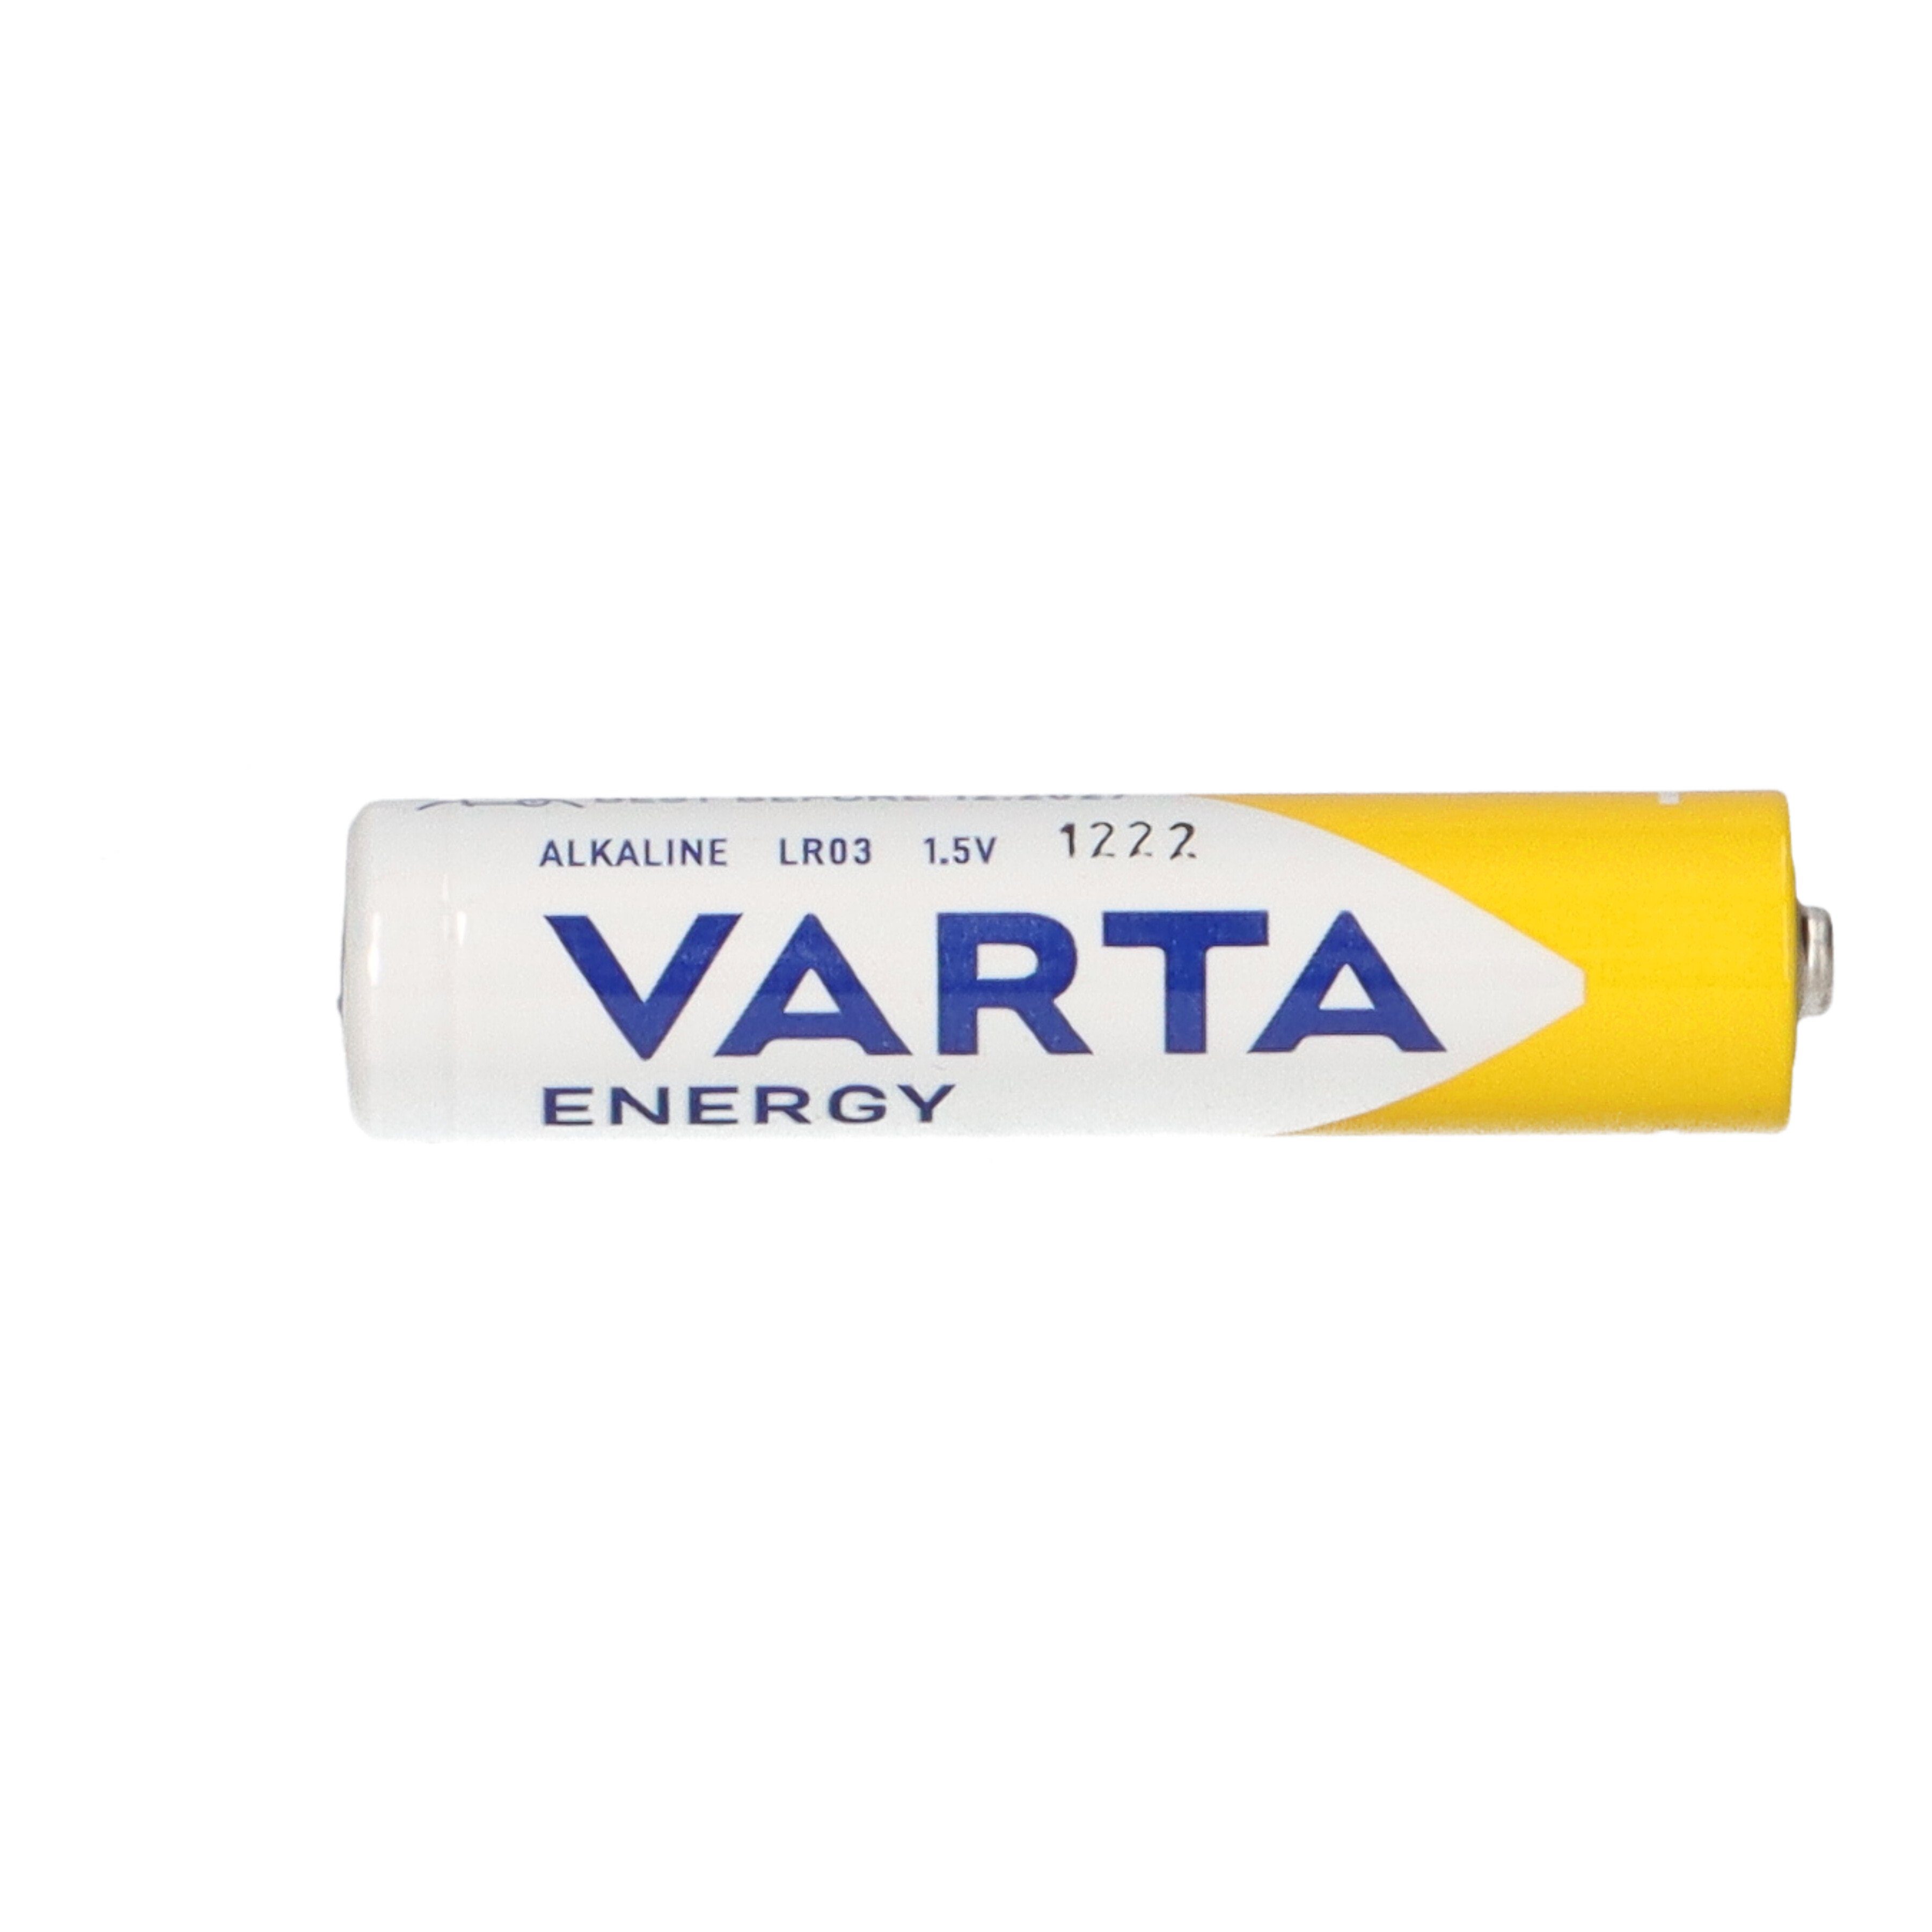 Batterie VARTA 1,5V Varta 4er AAA Blister Micro Batterie AlMn Energy